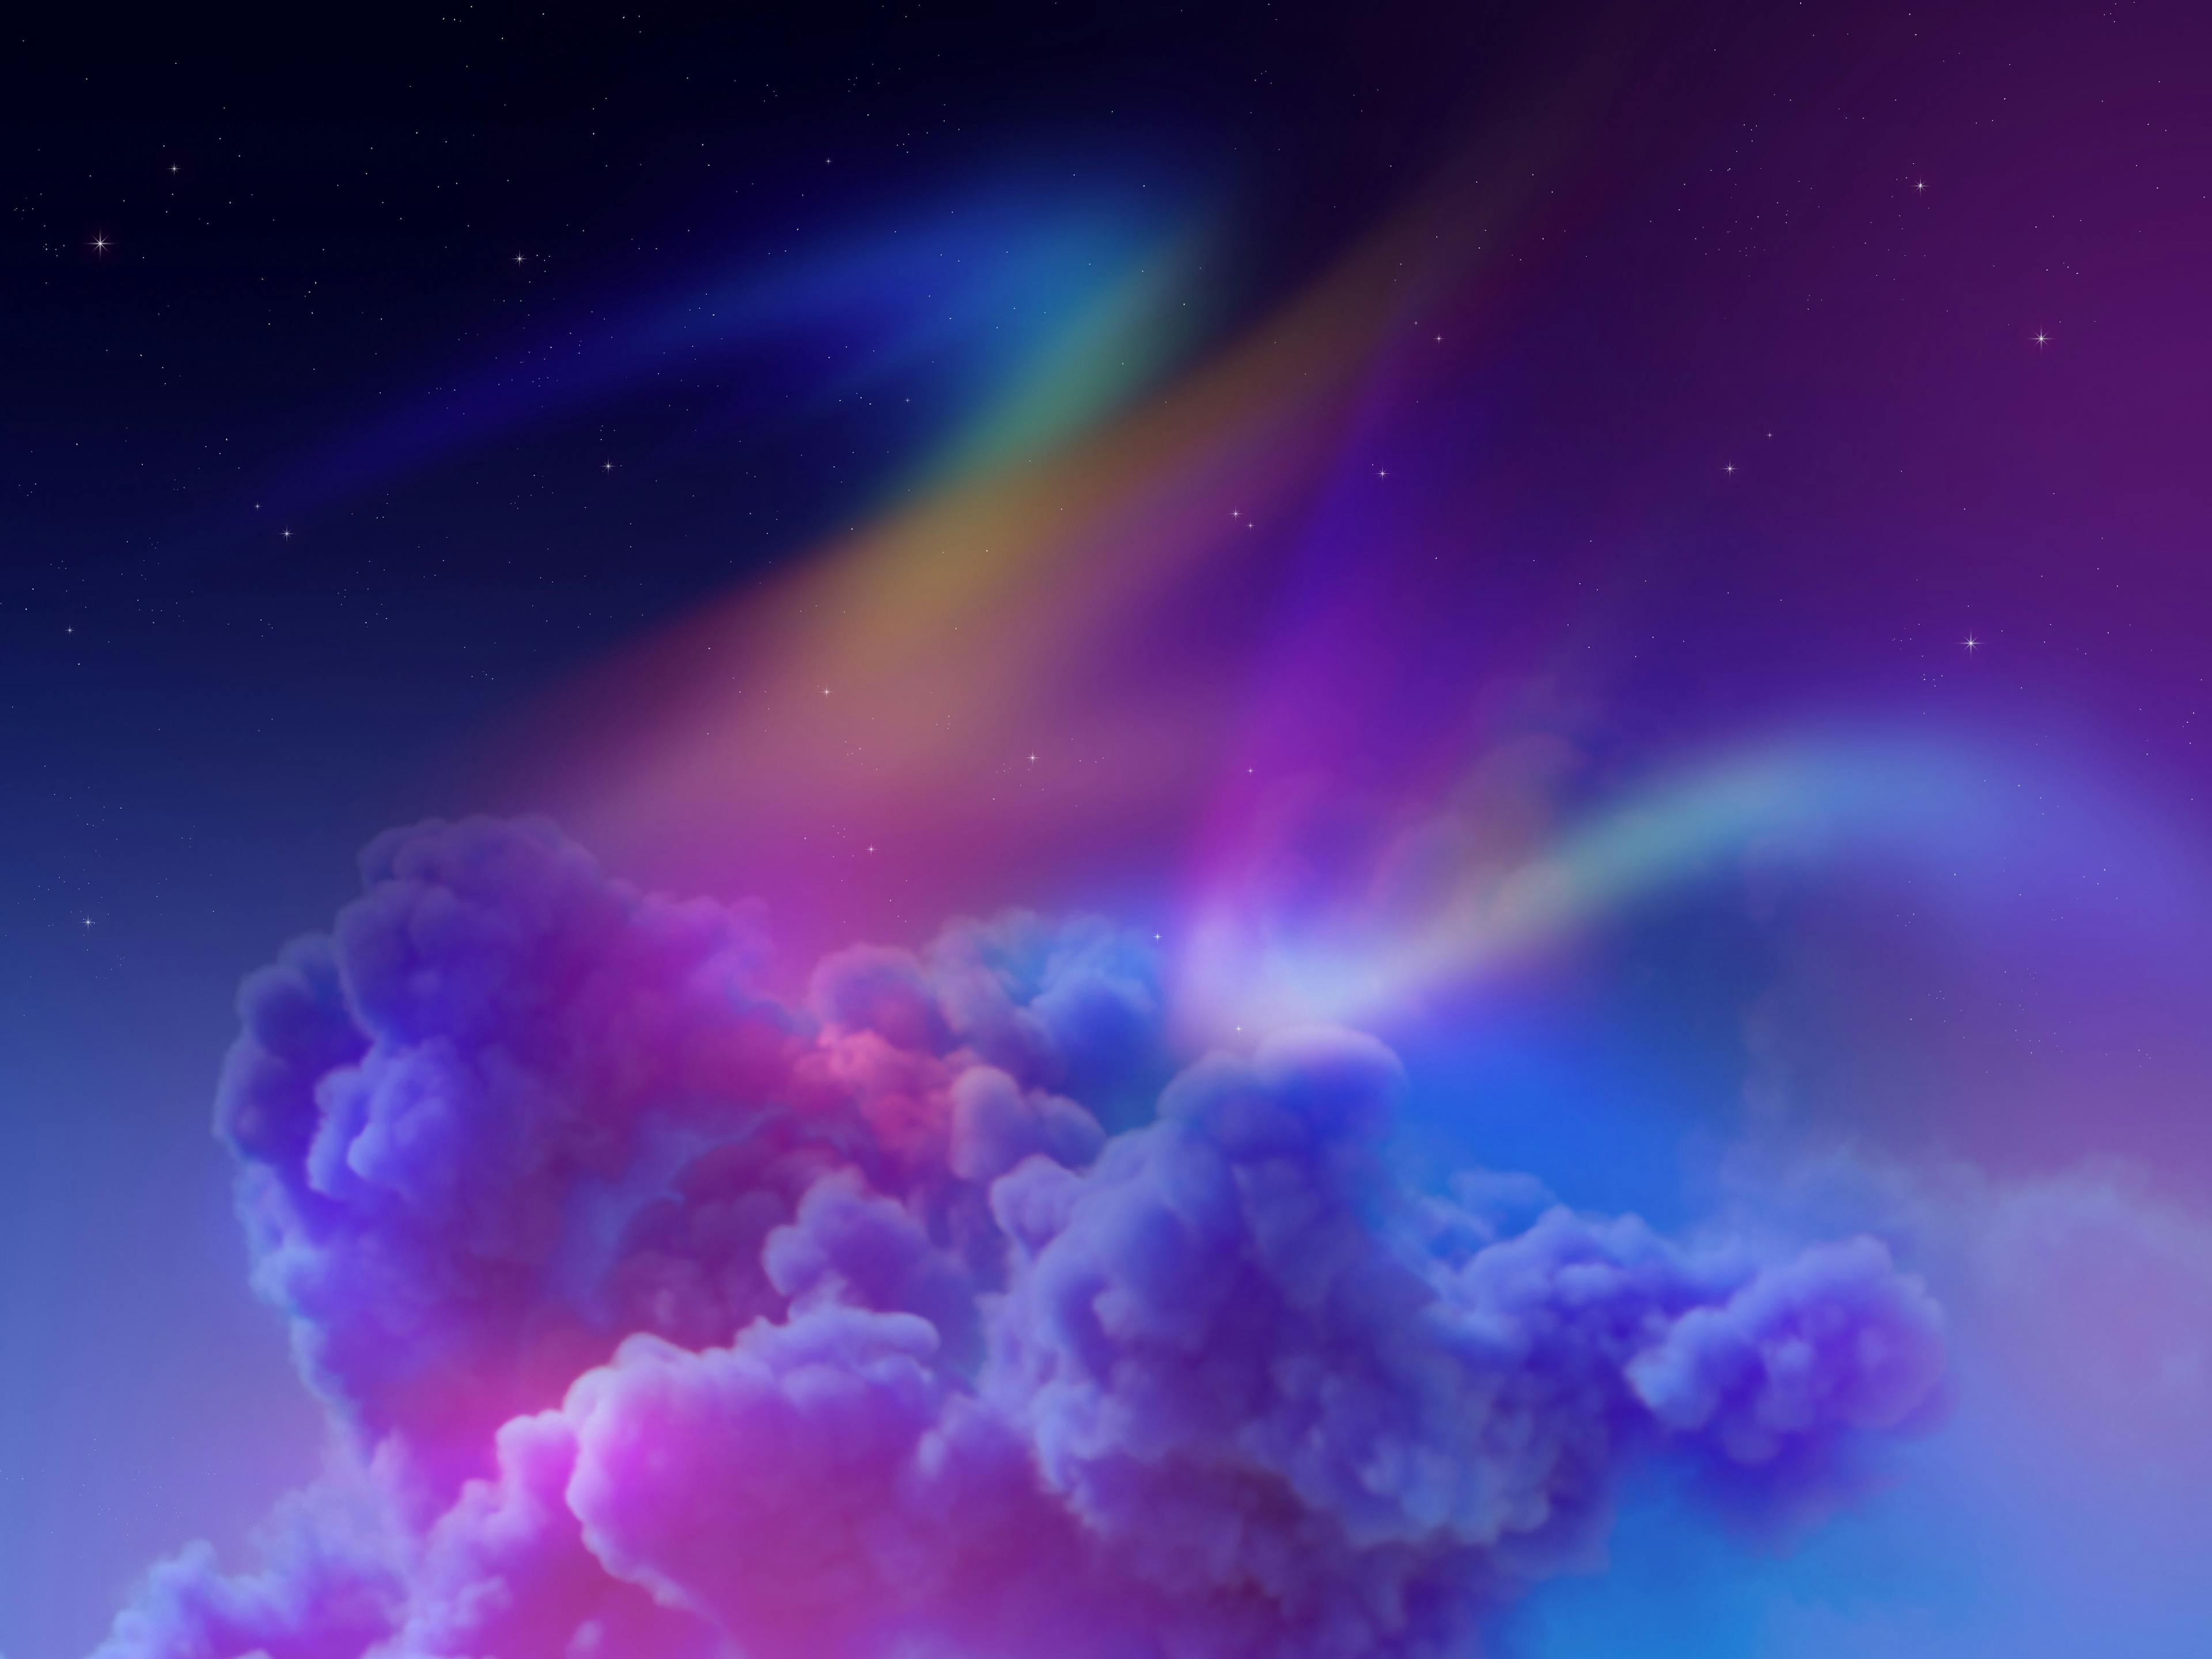 ultraviolet light visualized in a purplish sky